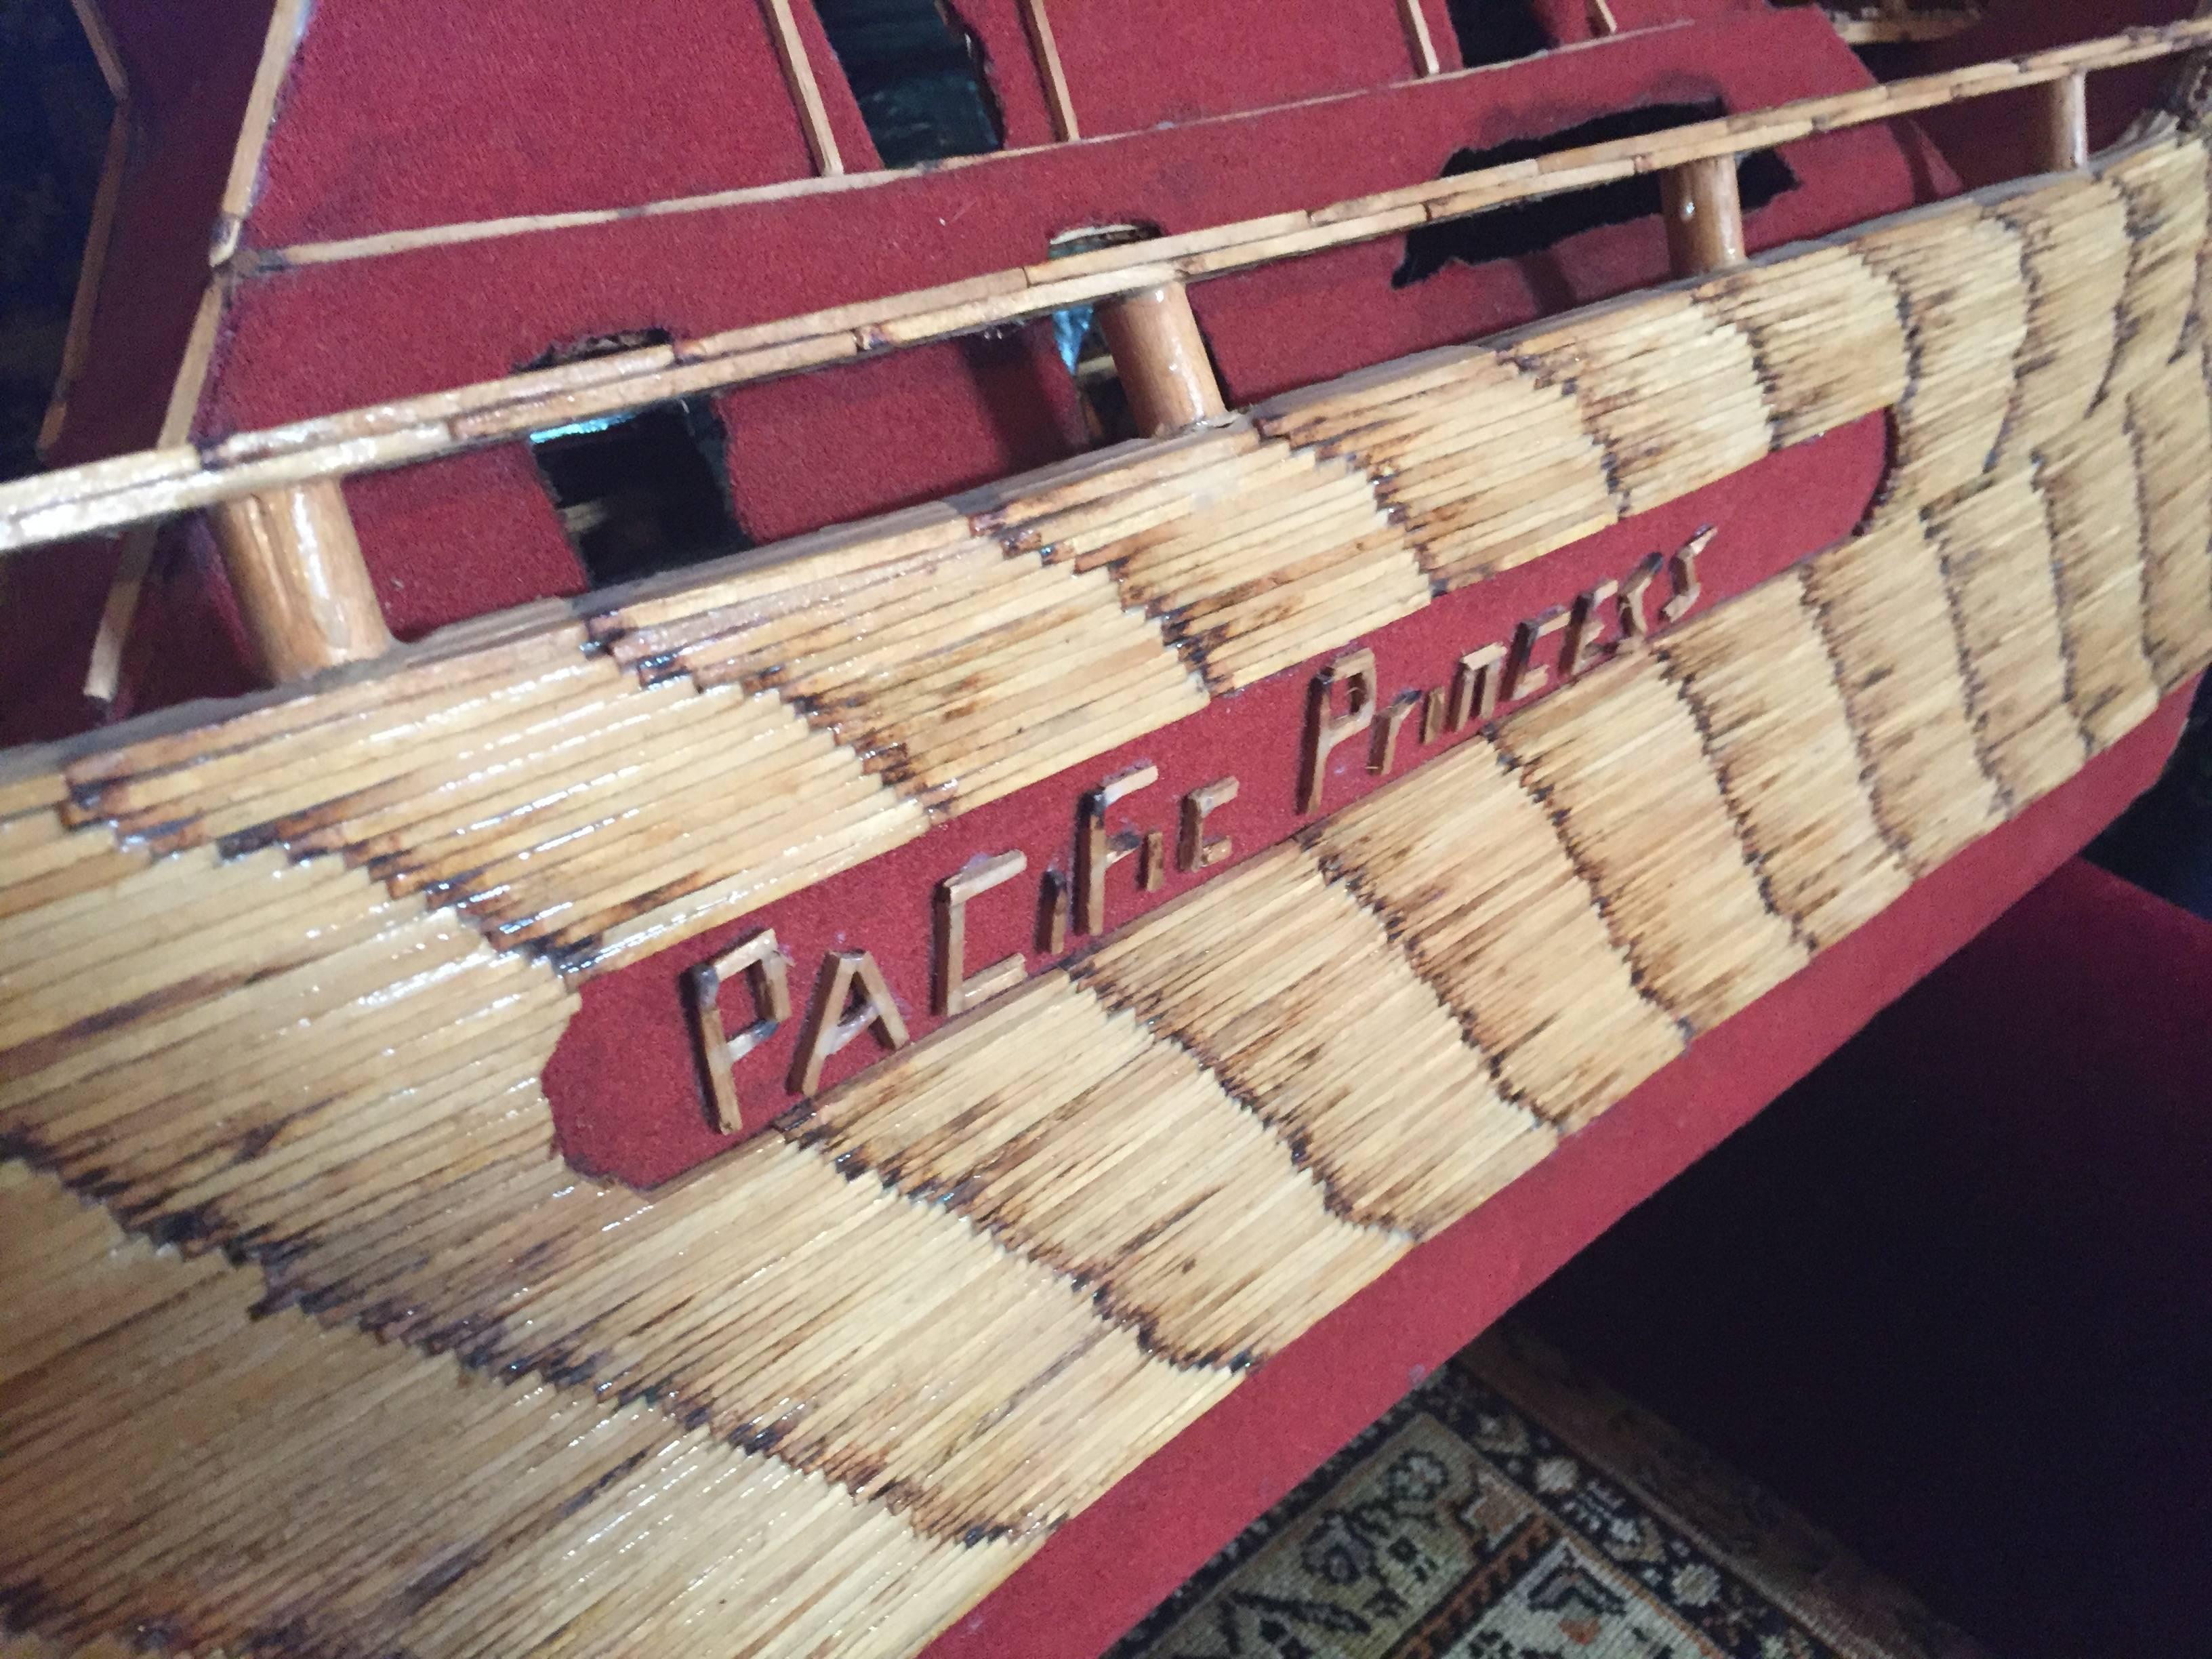 Folk Art Pacific Princess Schiff von Matrosen des Zweiten Weltkriegs
Hergestellt mit Streichhölzern und anderem Holz und Farbe.